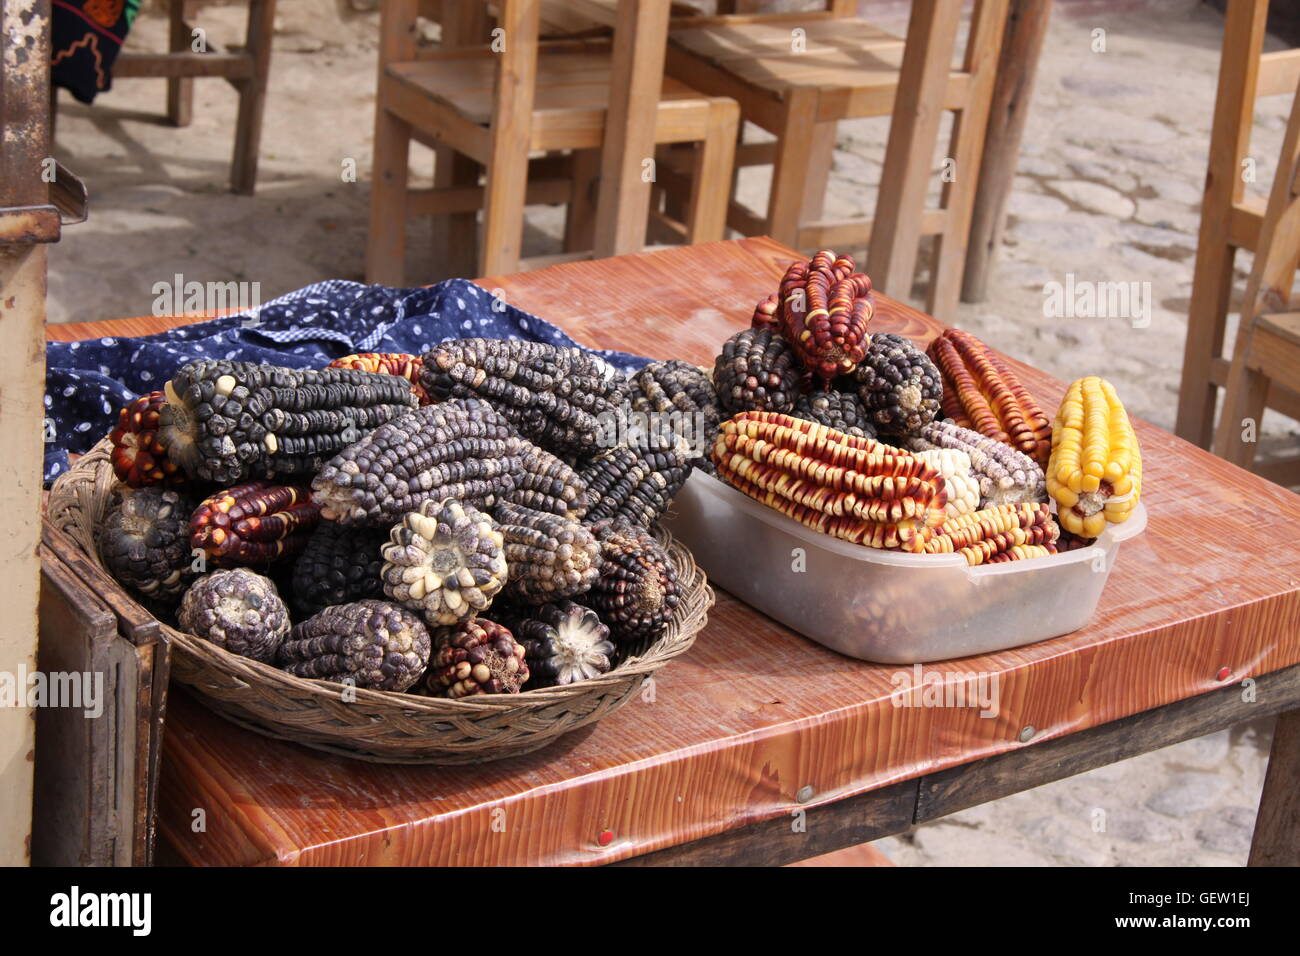 Multi-colore sulla pannocchia di mais in un mercato in Perù, Sud America Foto Stock